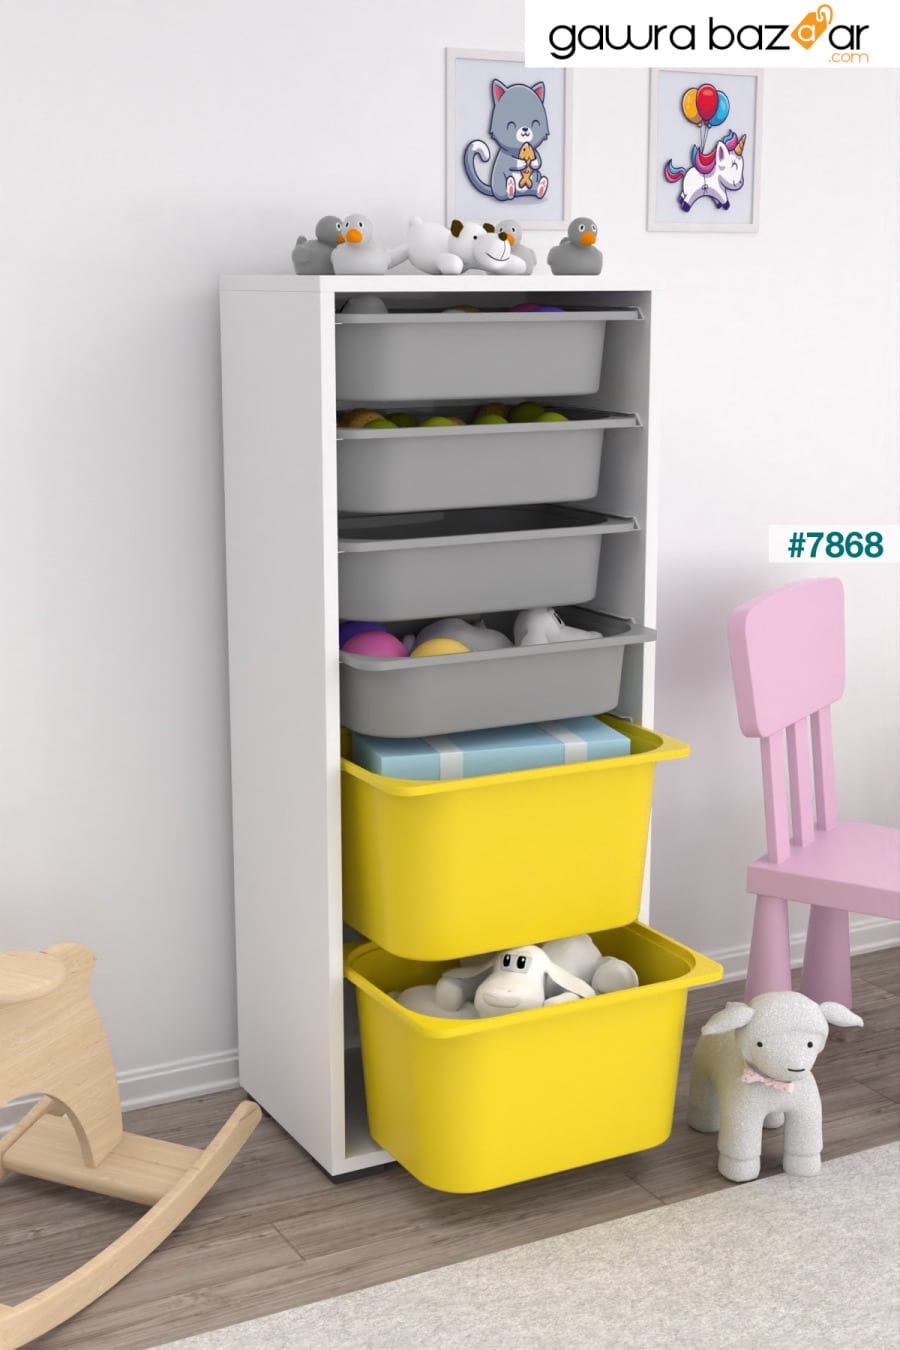 2 Big 4 خزانة ألعاب صغيرة متعددة الأغراض للمطبخ والحمام خزانة ألعاب باللون الأصفر والرمادي Pratico 1